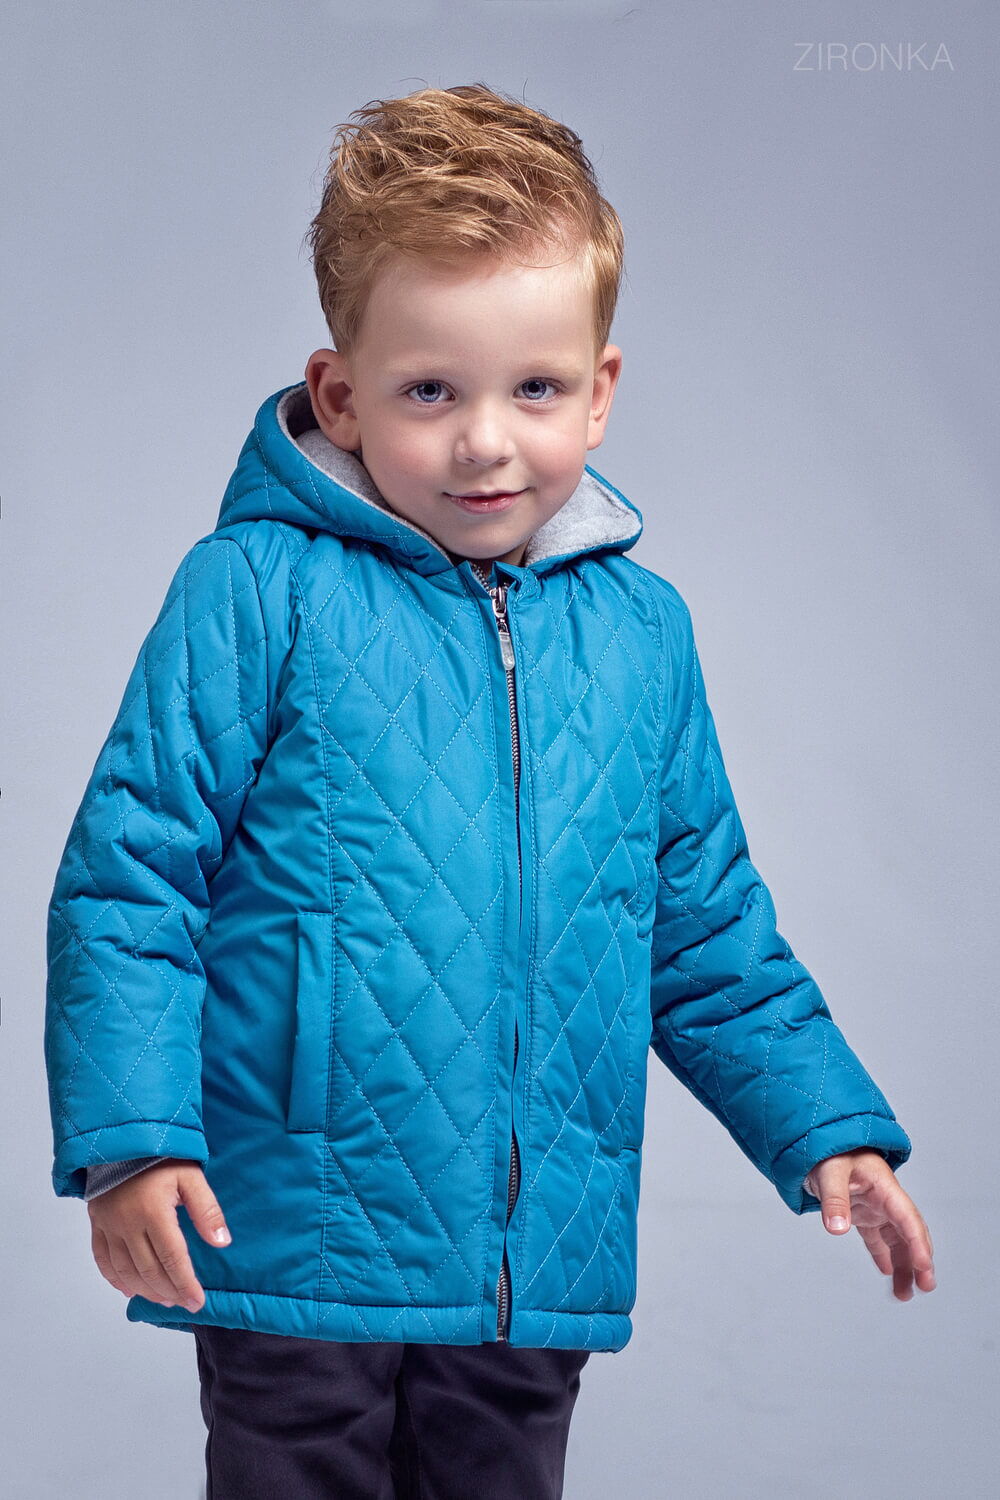 Куртка для мальчика Zironka стеганая синяя 2054-2 - фото